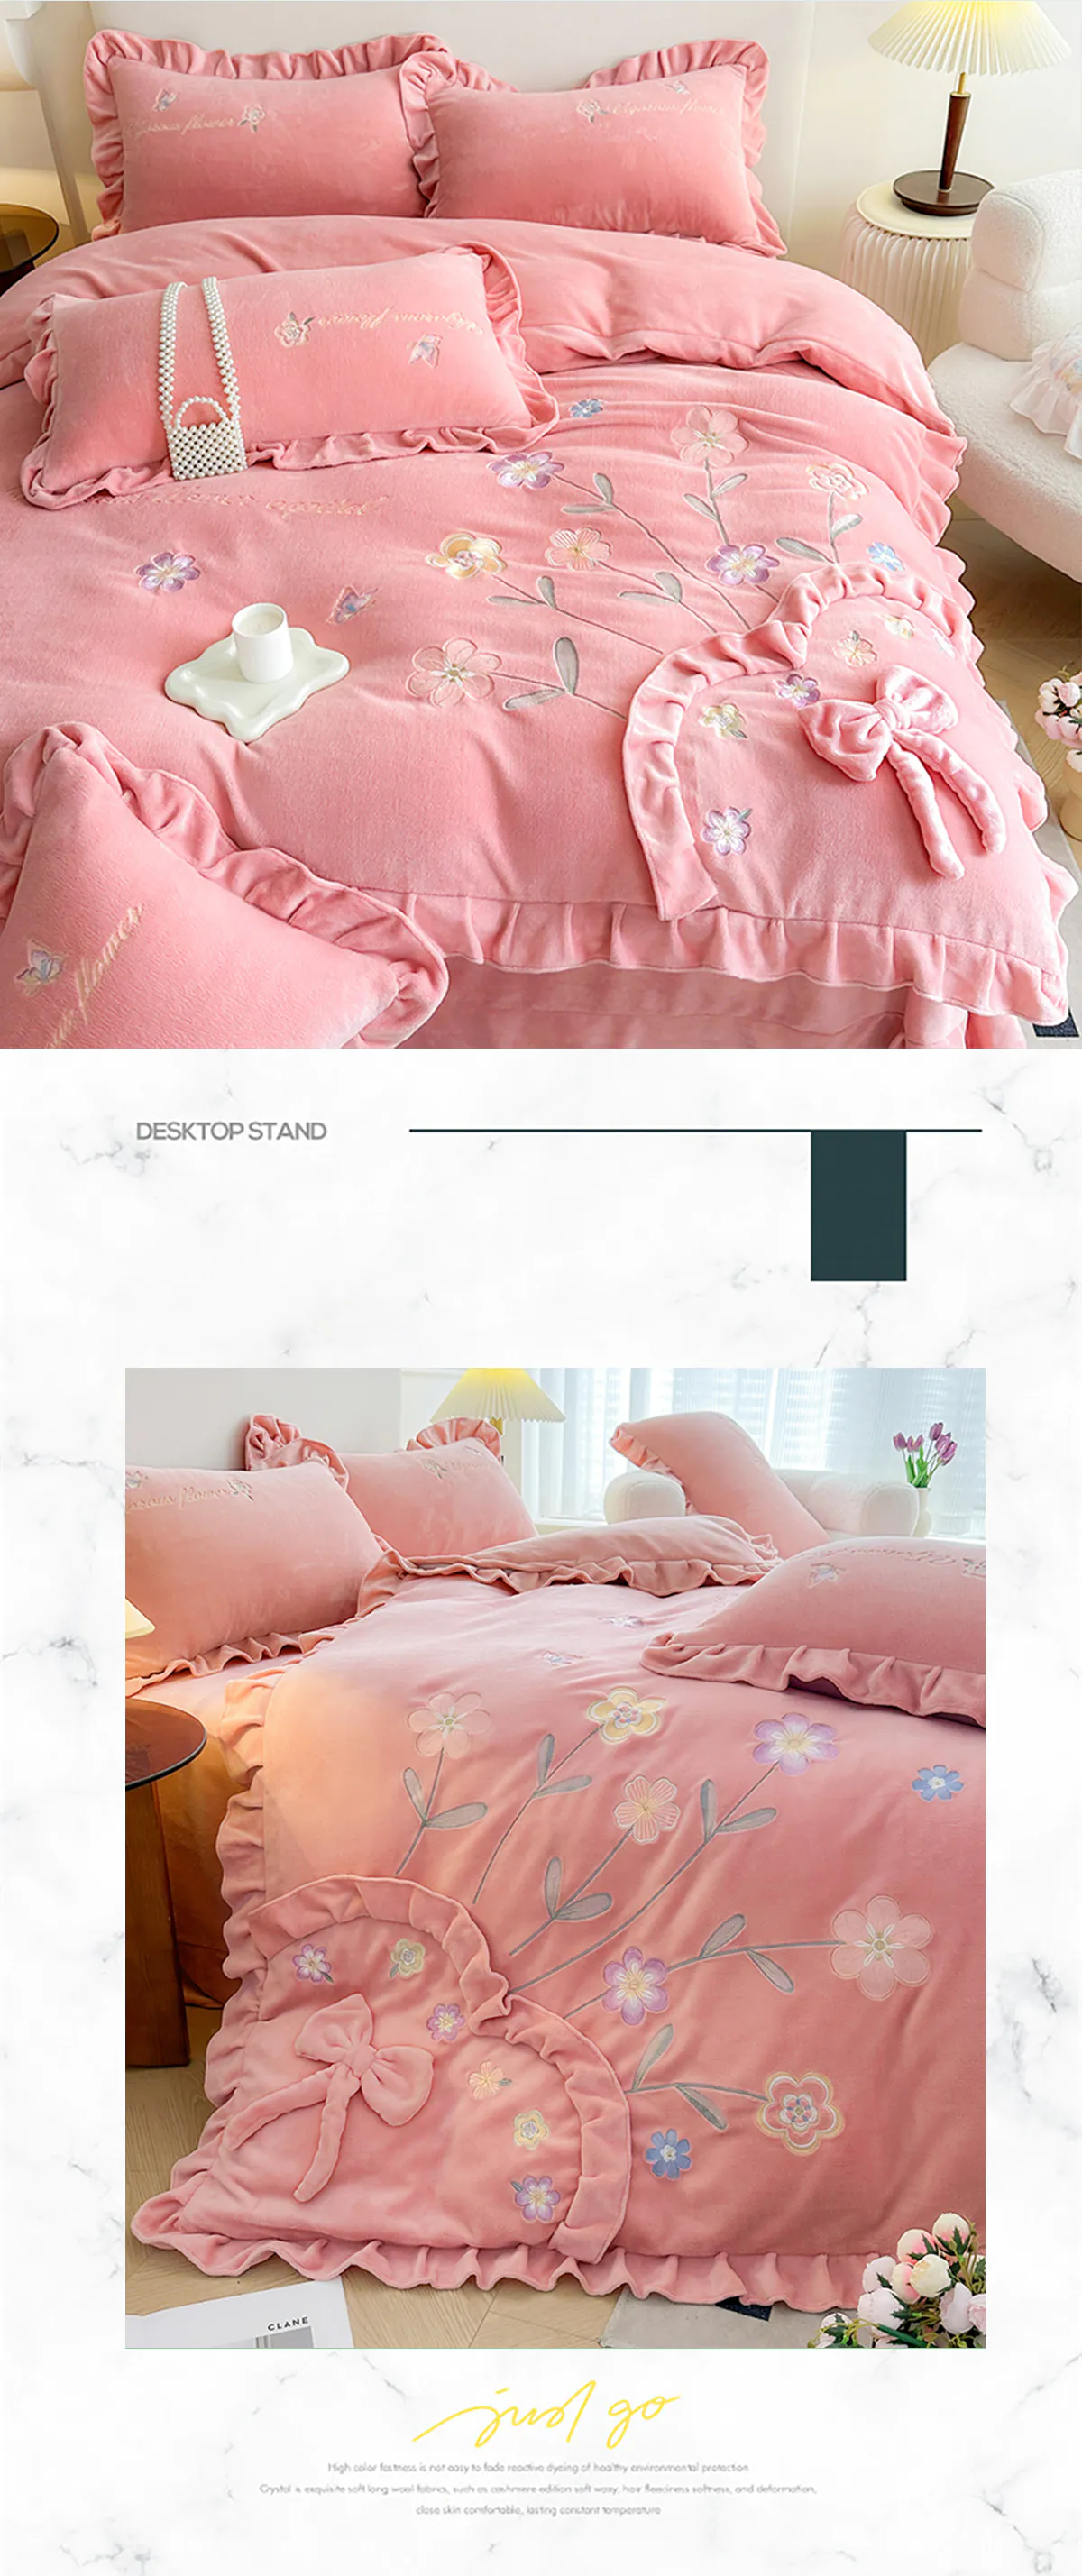 Aesthetic-Embroidery-Warm-Milk-Velvet-Duvet-Cover-Bedding-Set14